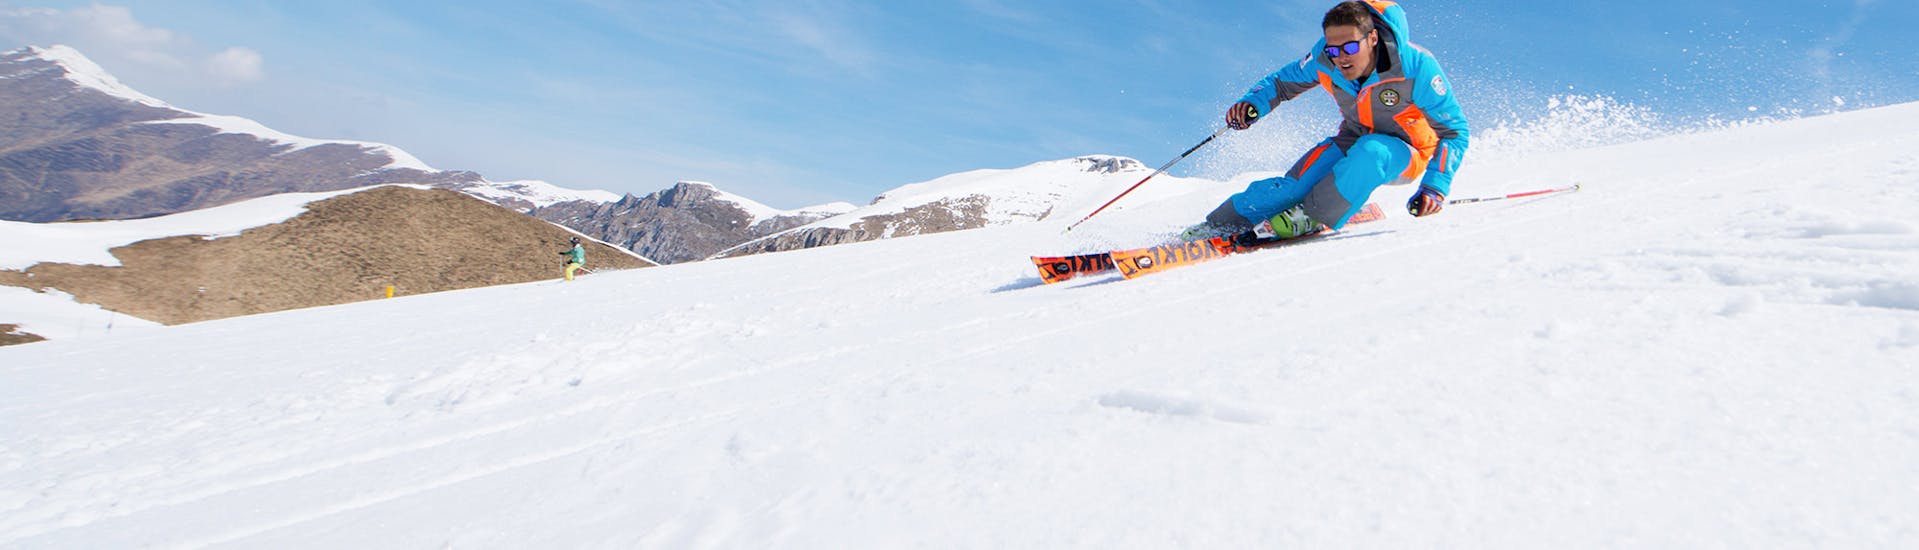 Maestro di sci durante una giornata di sole a Limone durante una delle lezioni private di sci freeride.